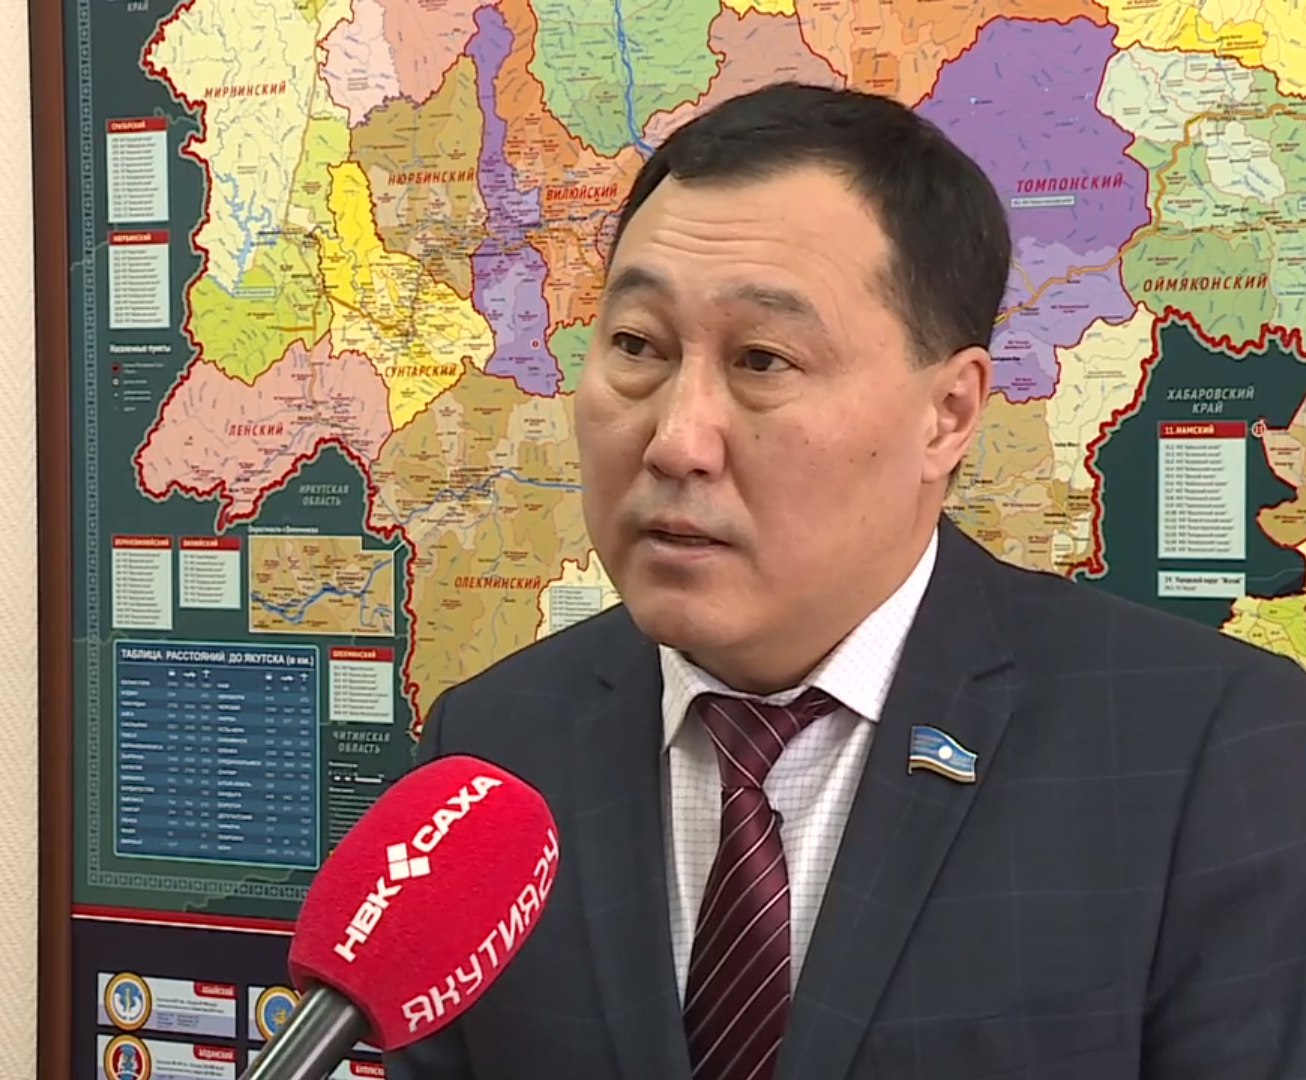 Андрей Находкин заявил, что Ил Тумэн будет работать над смягчением последствий санкций для якутян